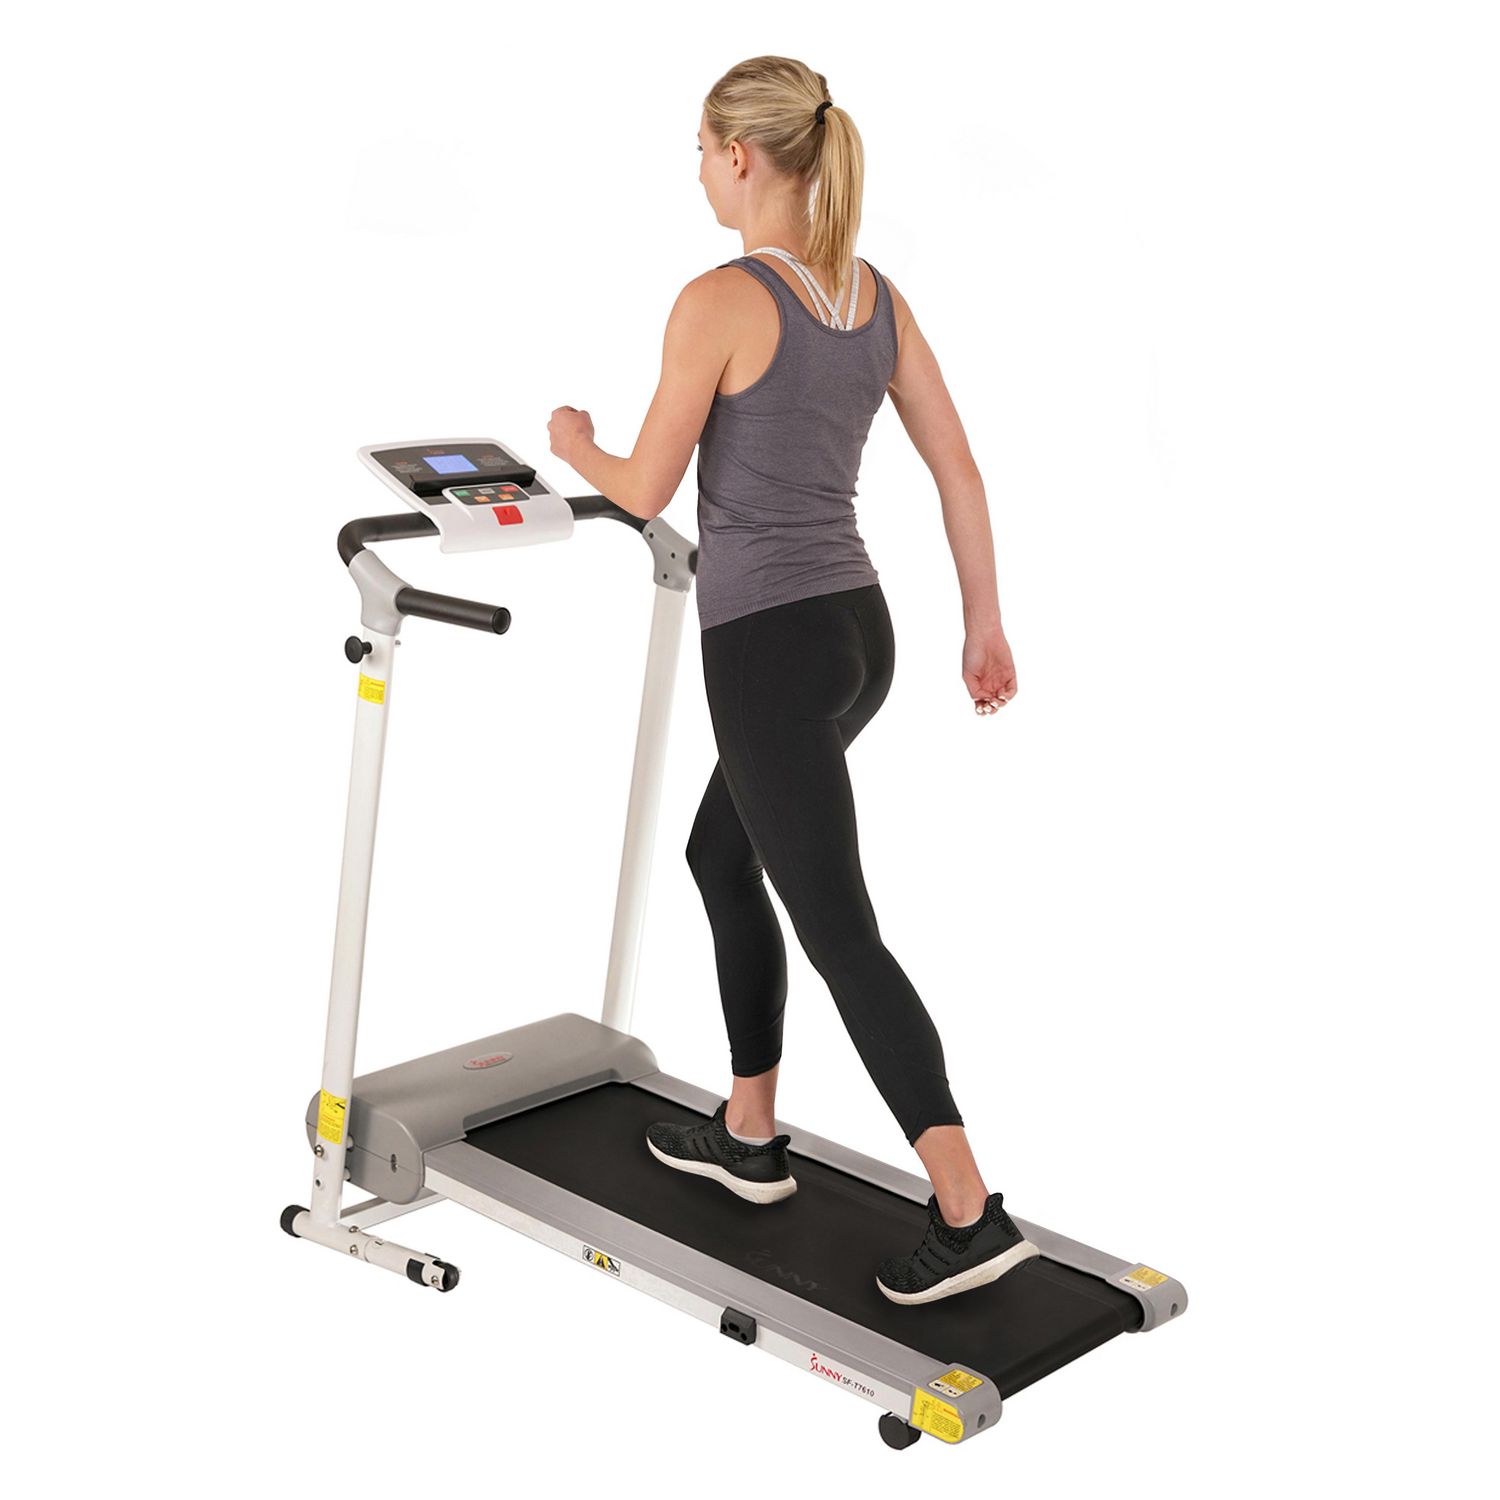 Sunny Health & Fitness Treadmill 